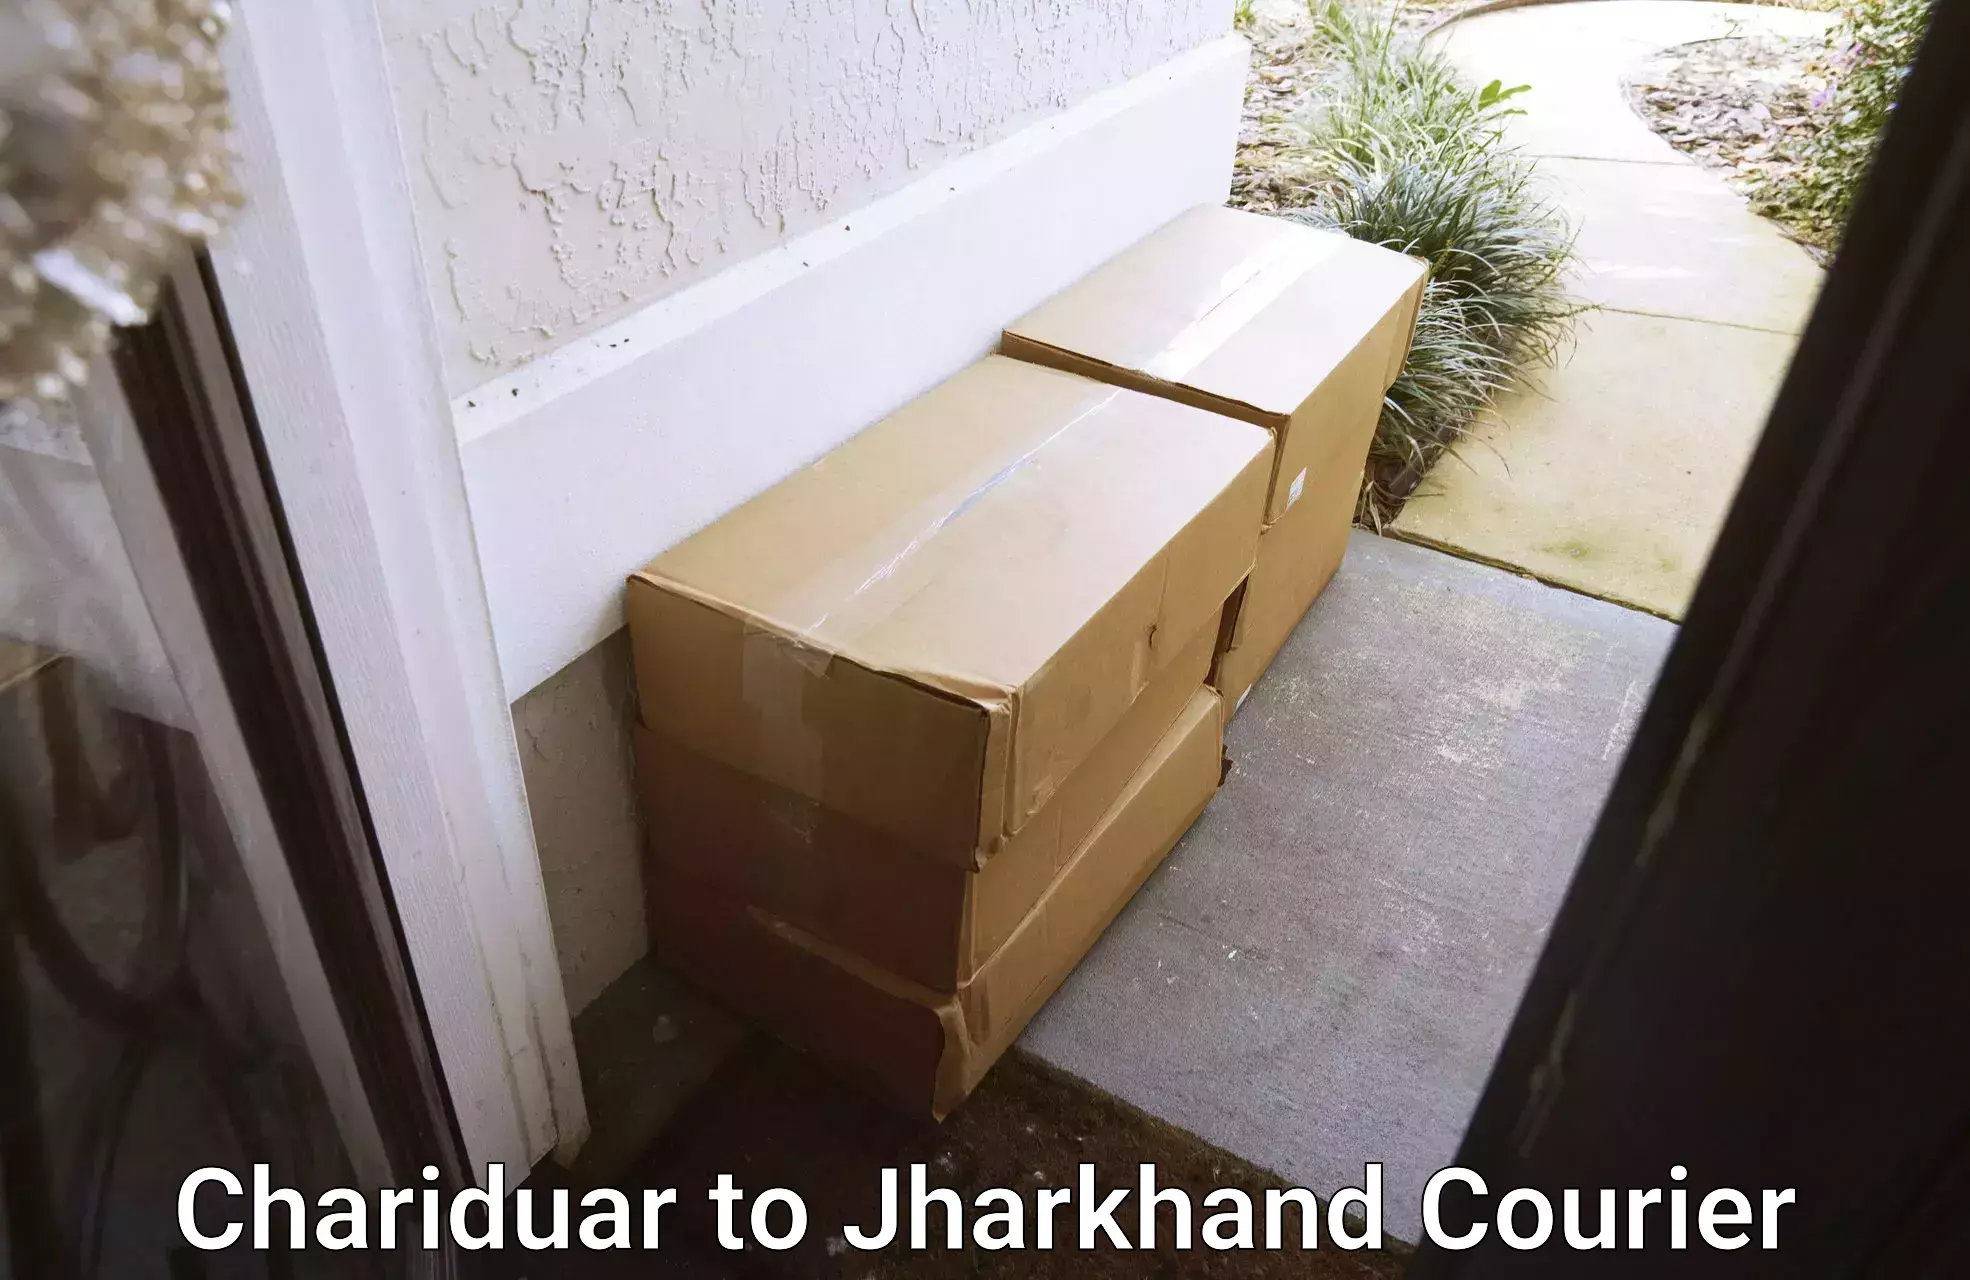 Efficient parcel service Chariduar to Gobindpur